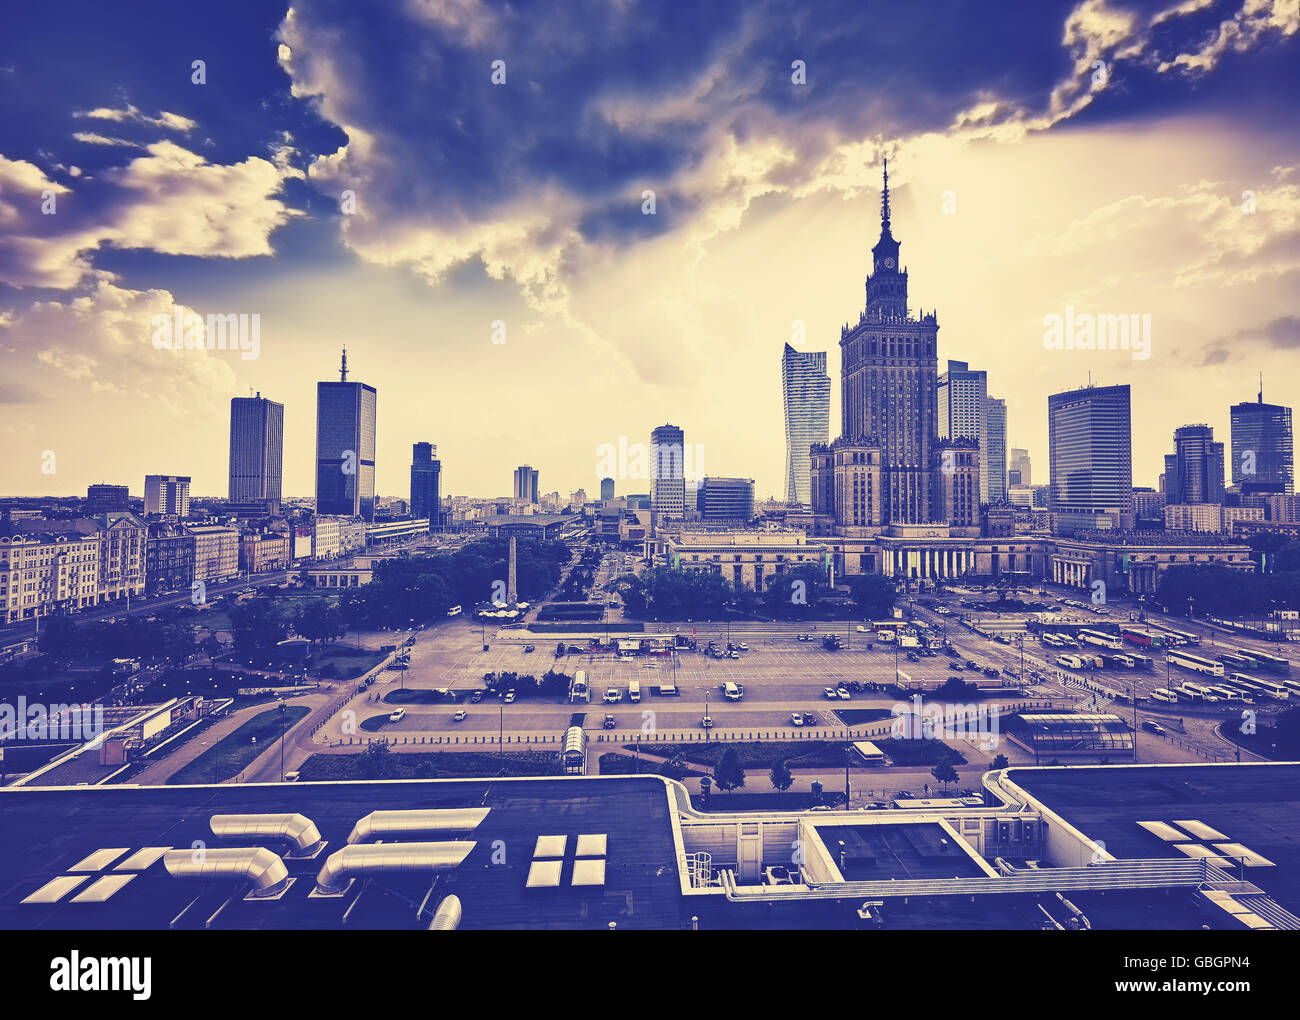 Vieux film granuleux avec le centre-ville de Varsovie de style palais de la Culture et de la science et de gratte-ciel au coucher du soleil, la Pologne. Banque D'Images